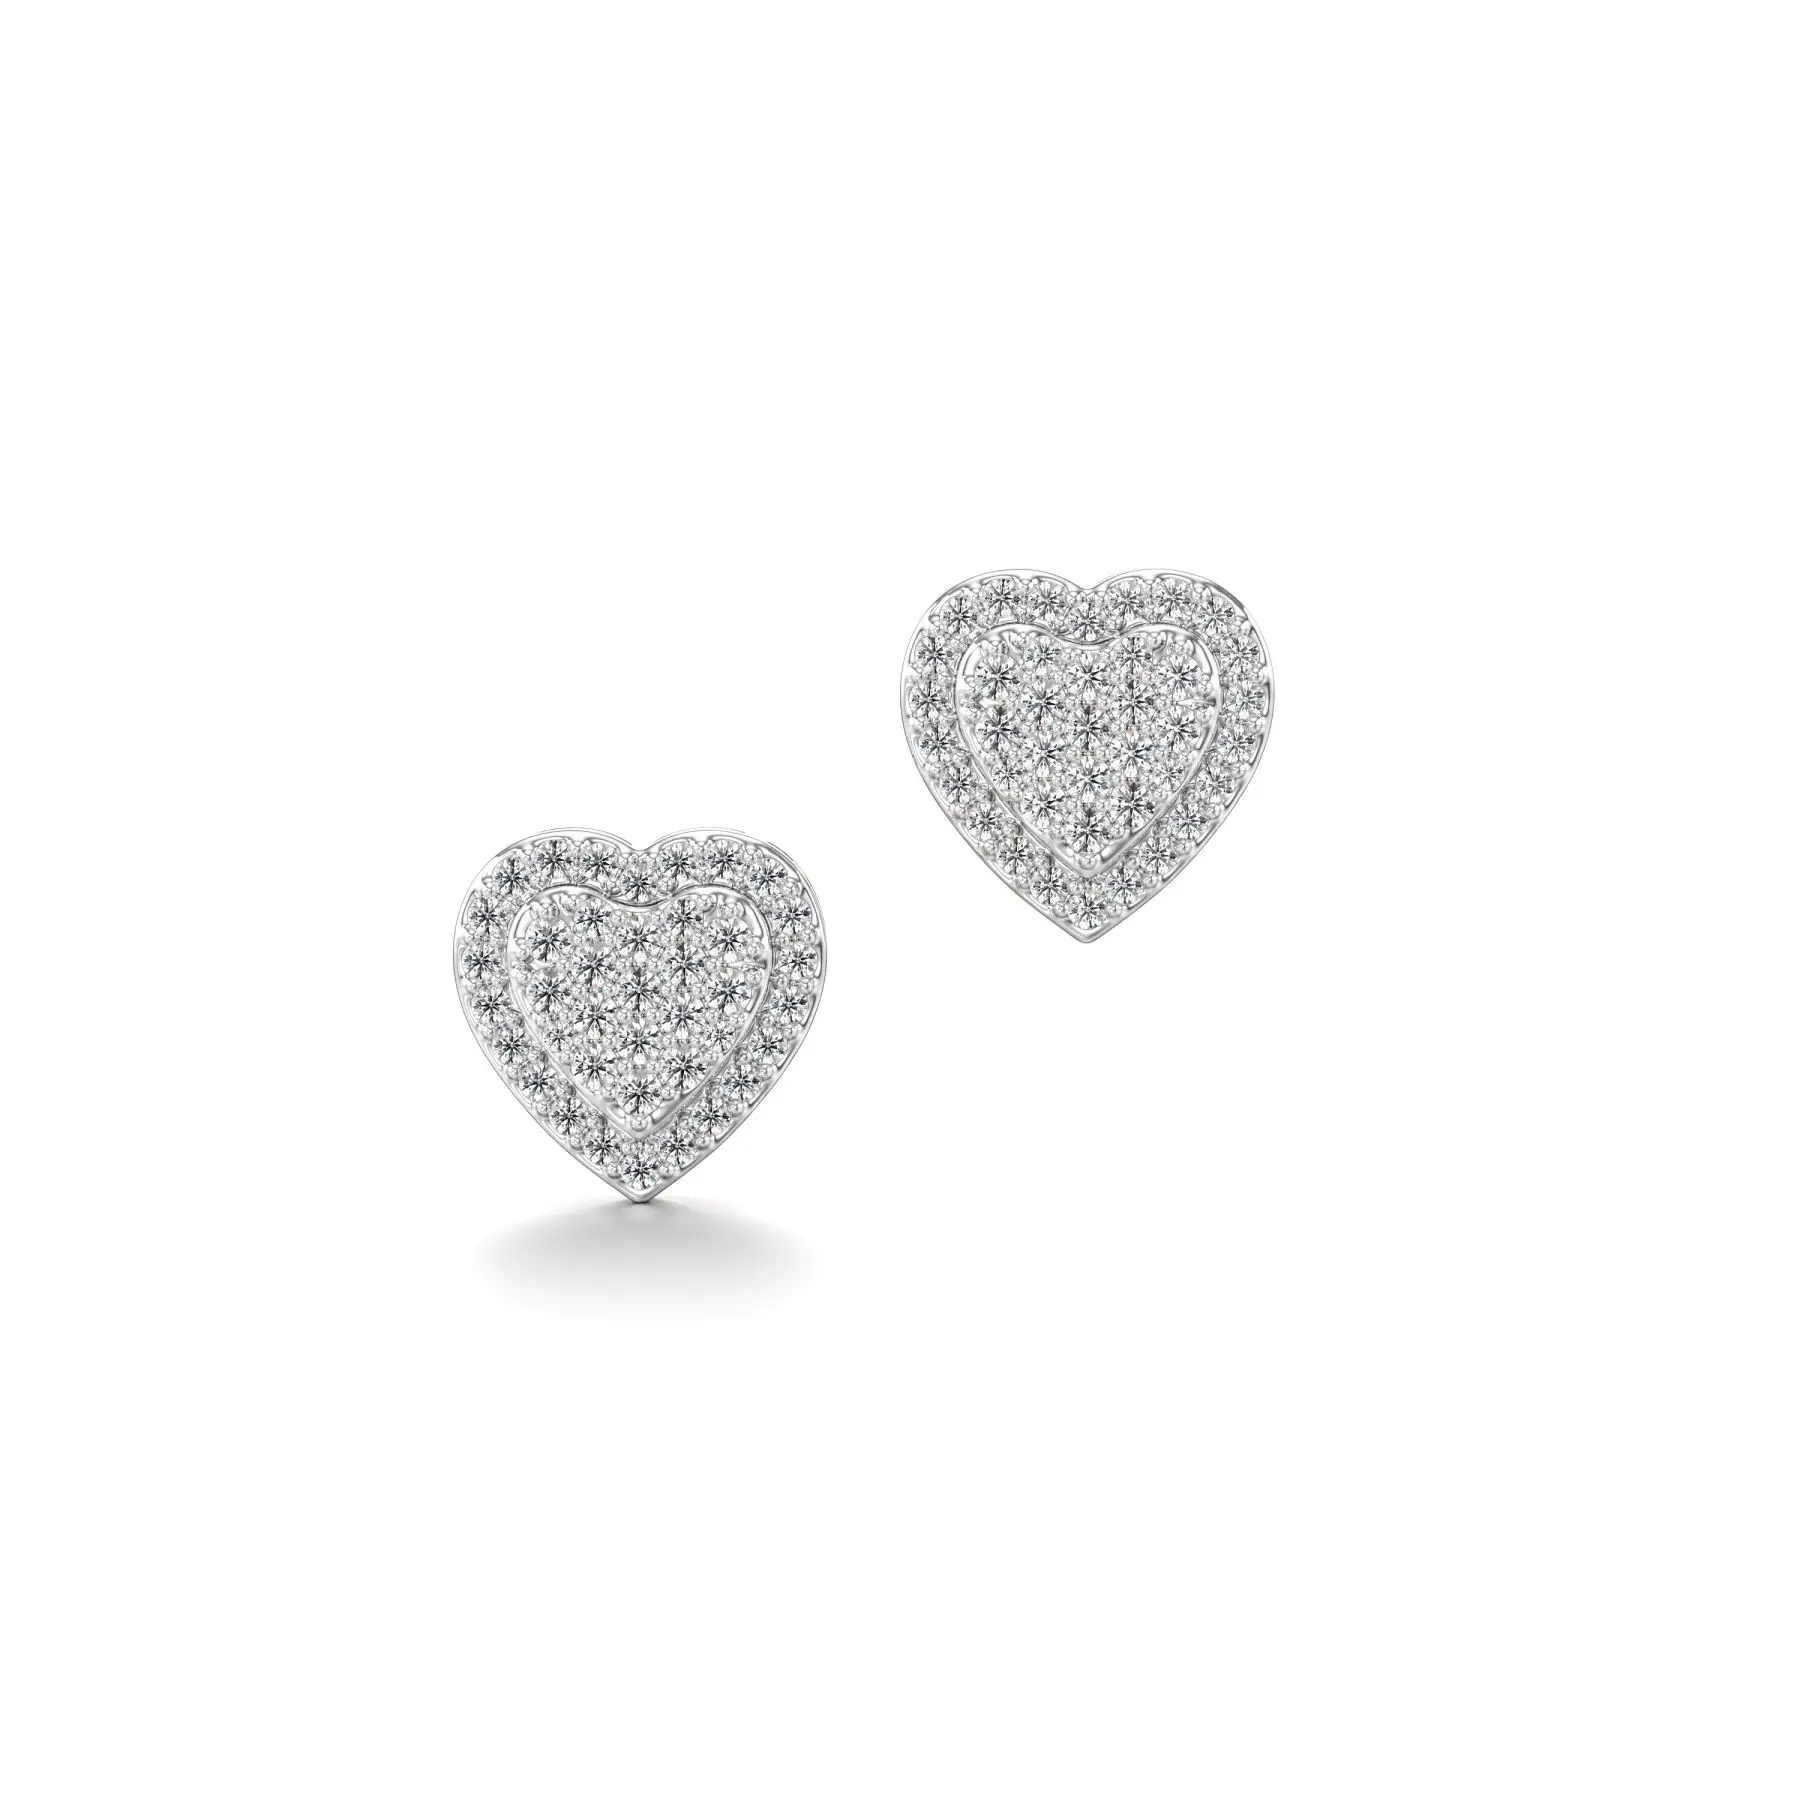 Frosty Heart Diamond Earrings in White 10k Gold